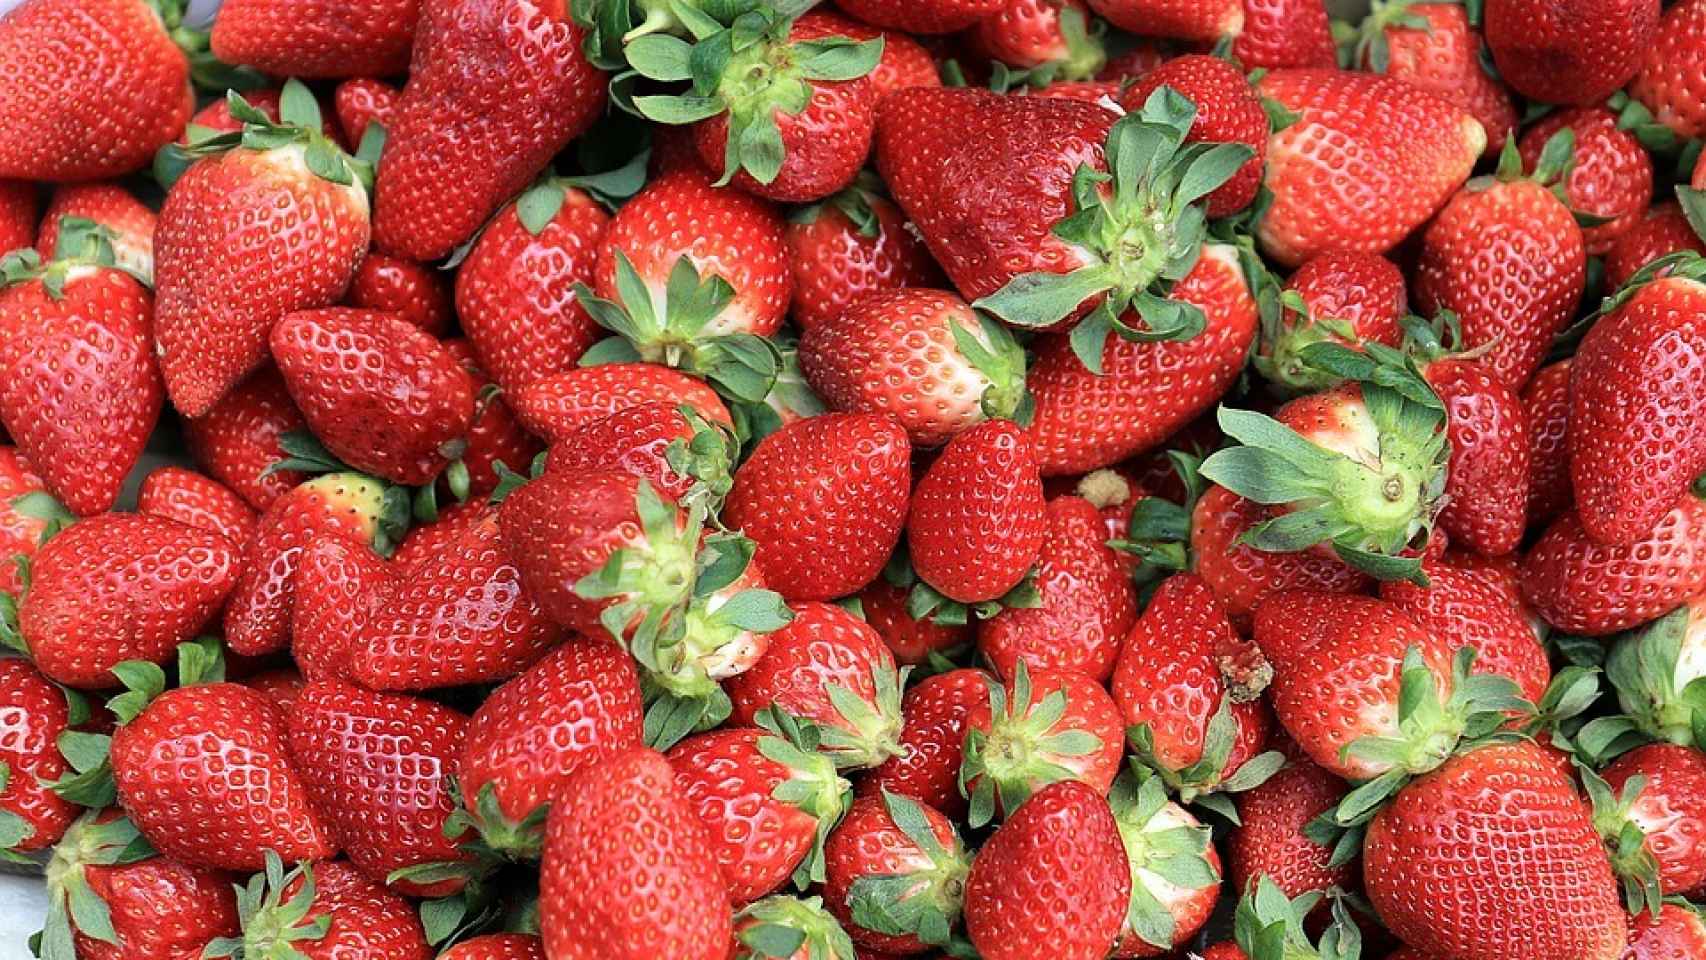 La fresa es la fruta con más pesticidas según el estudio de la EWG.